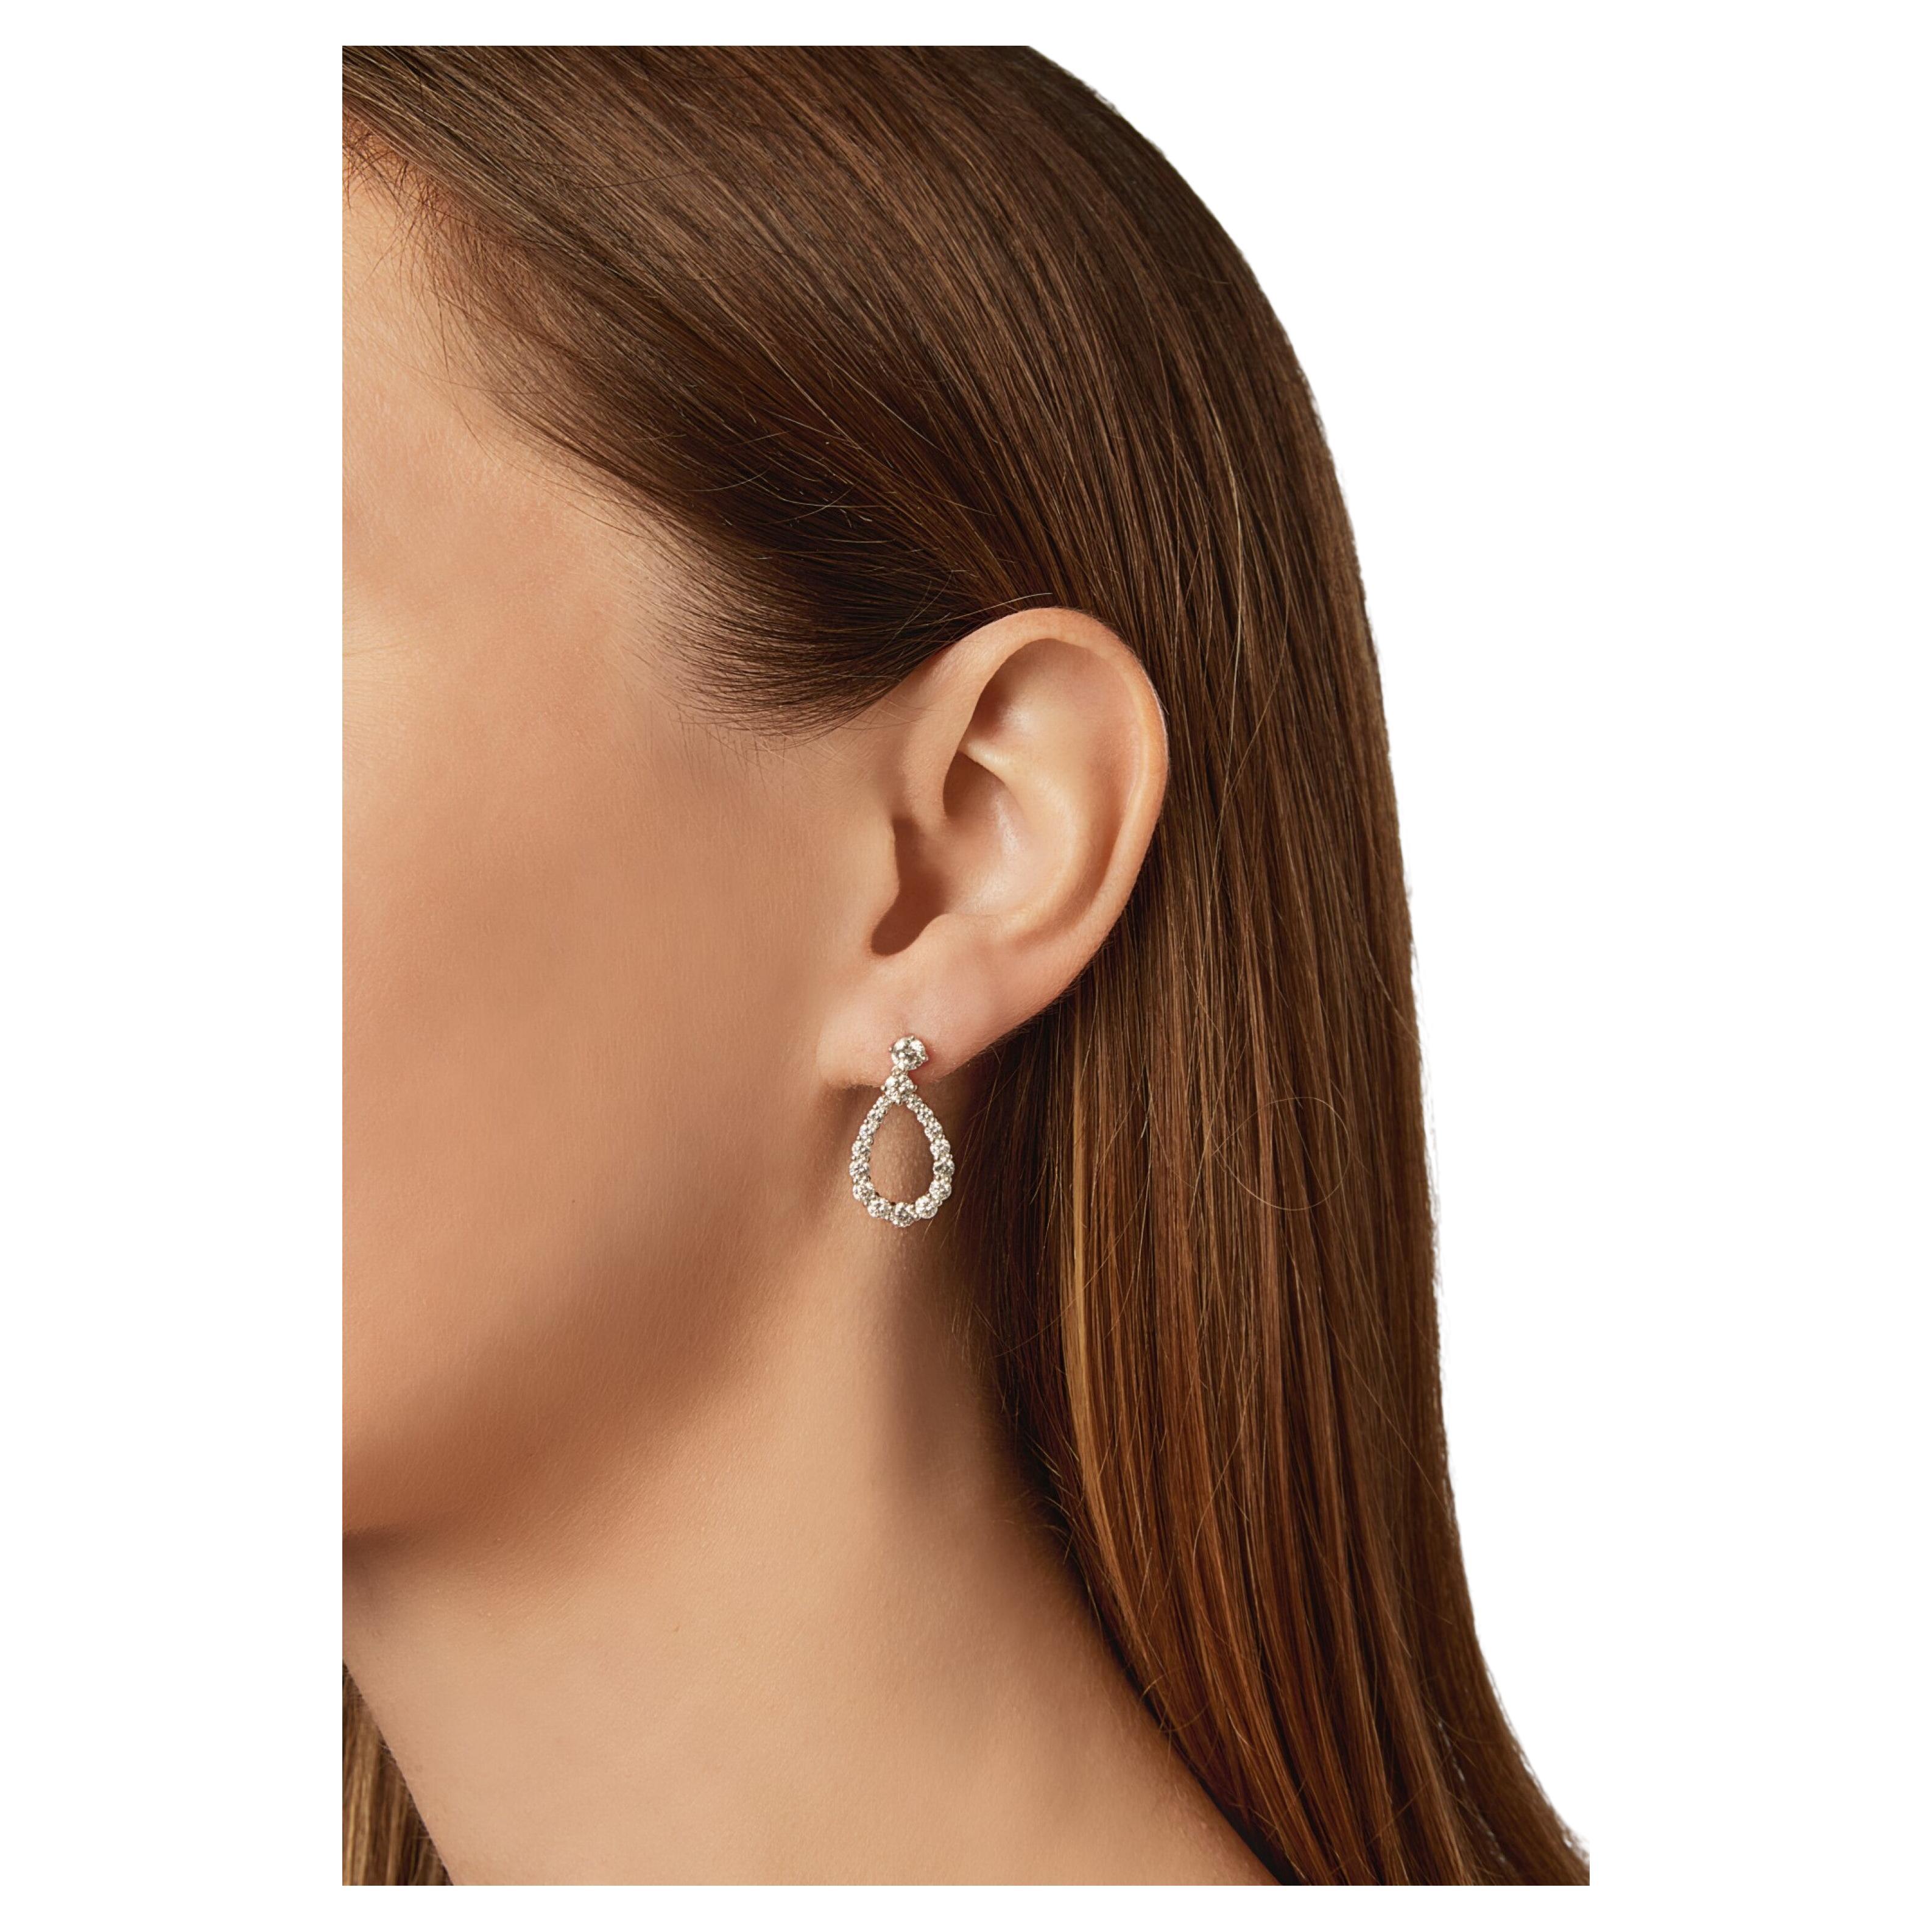 Voici l'incarnation du luxe et de la sophistication : les boucles d'oreilles Harry Winston Diamond Looping de taille moyenne, façonnées en platine et exhalant une élégance intemporelle.

Pesant 4,3 grammes et mesurant 20 x 9,3 mm (Lxl), ces boucles